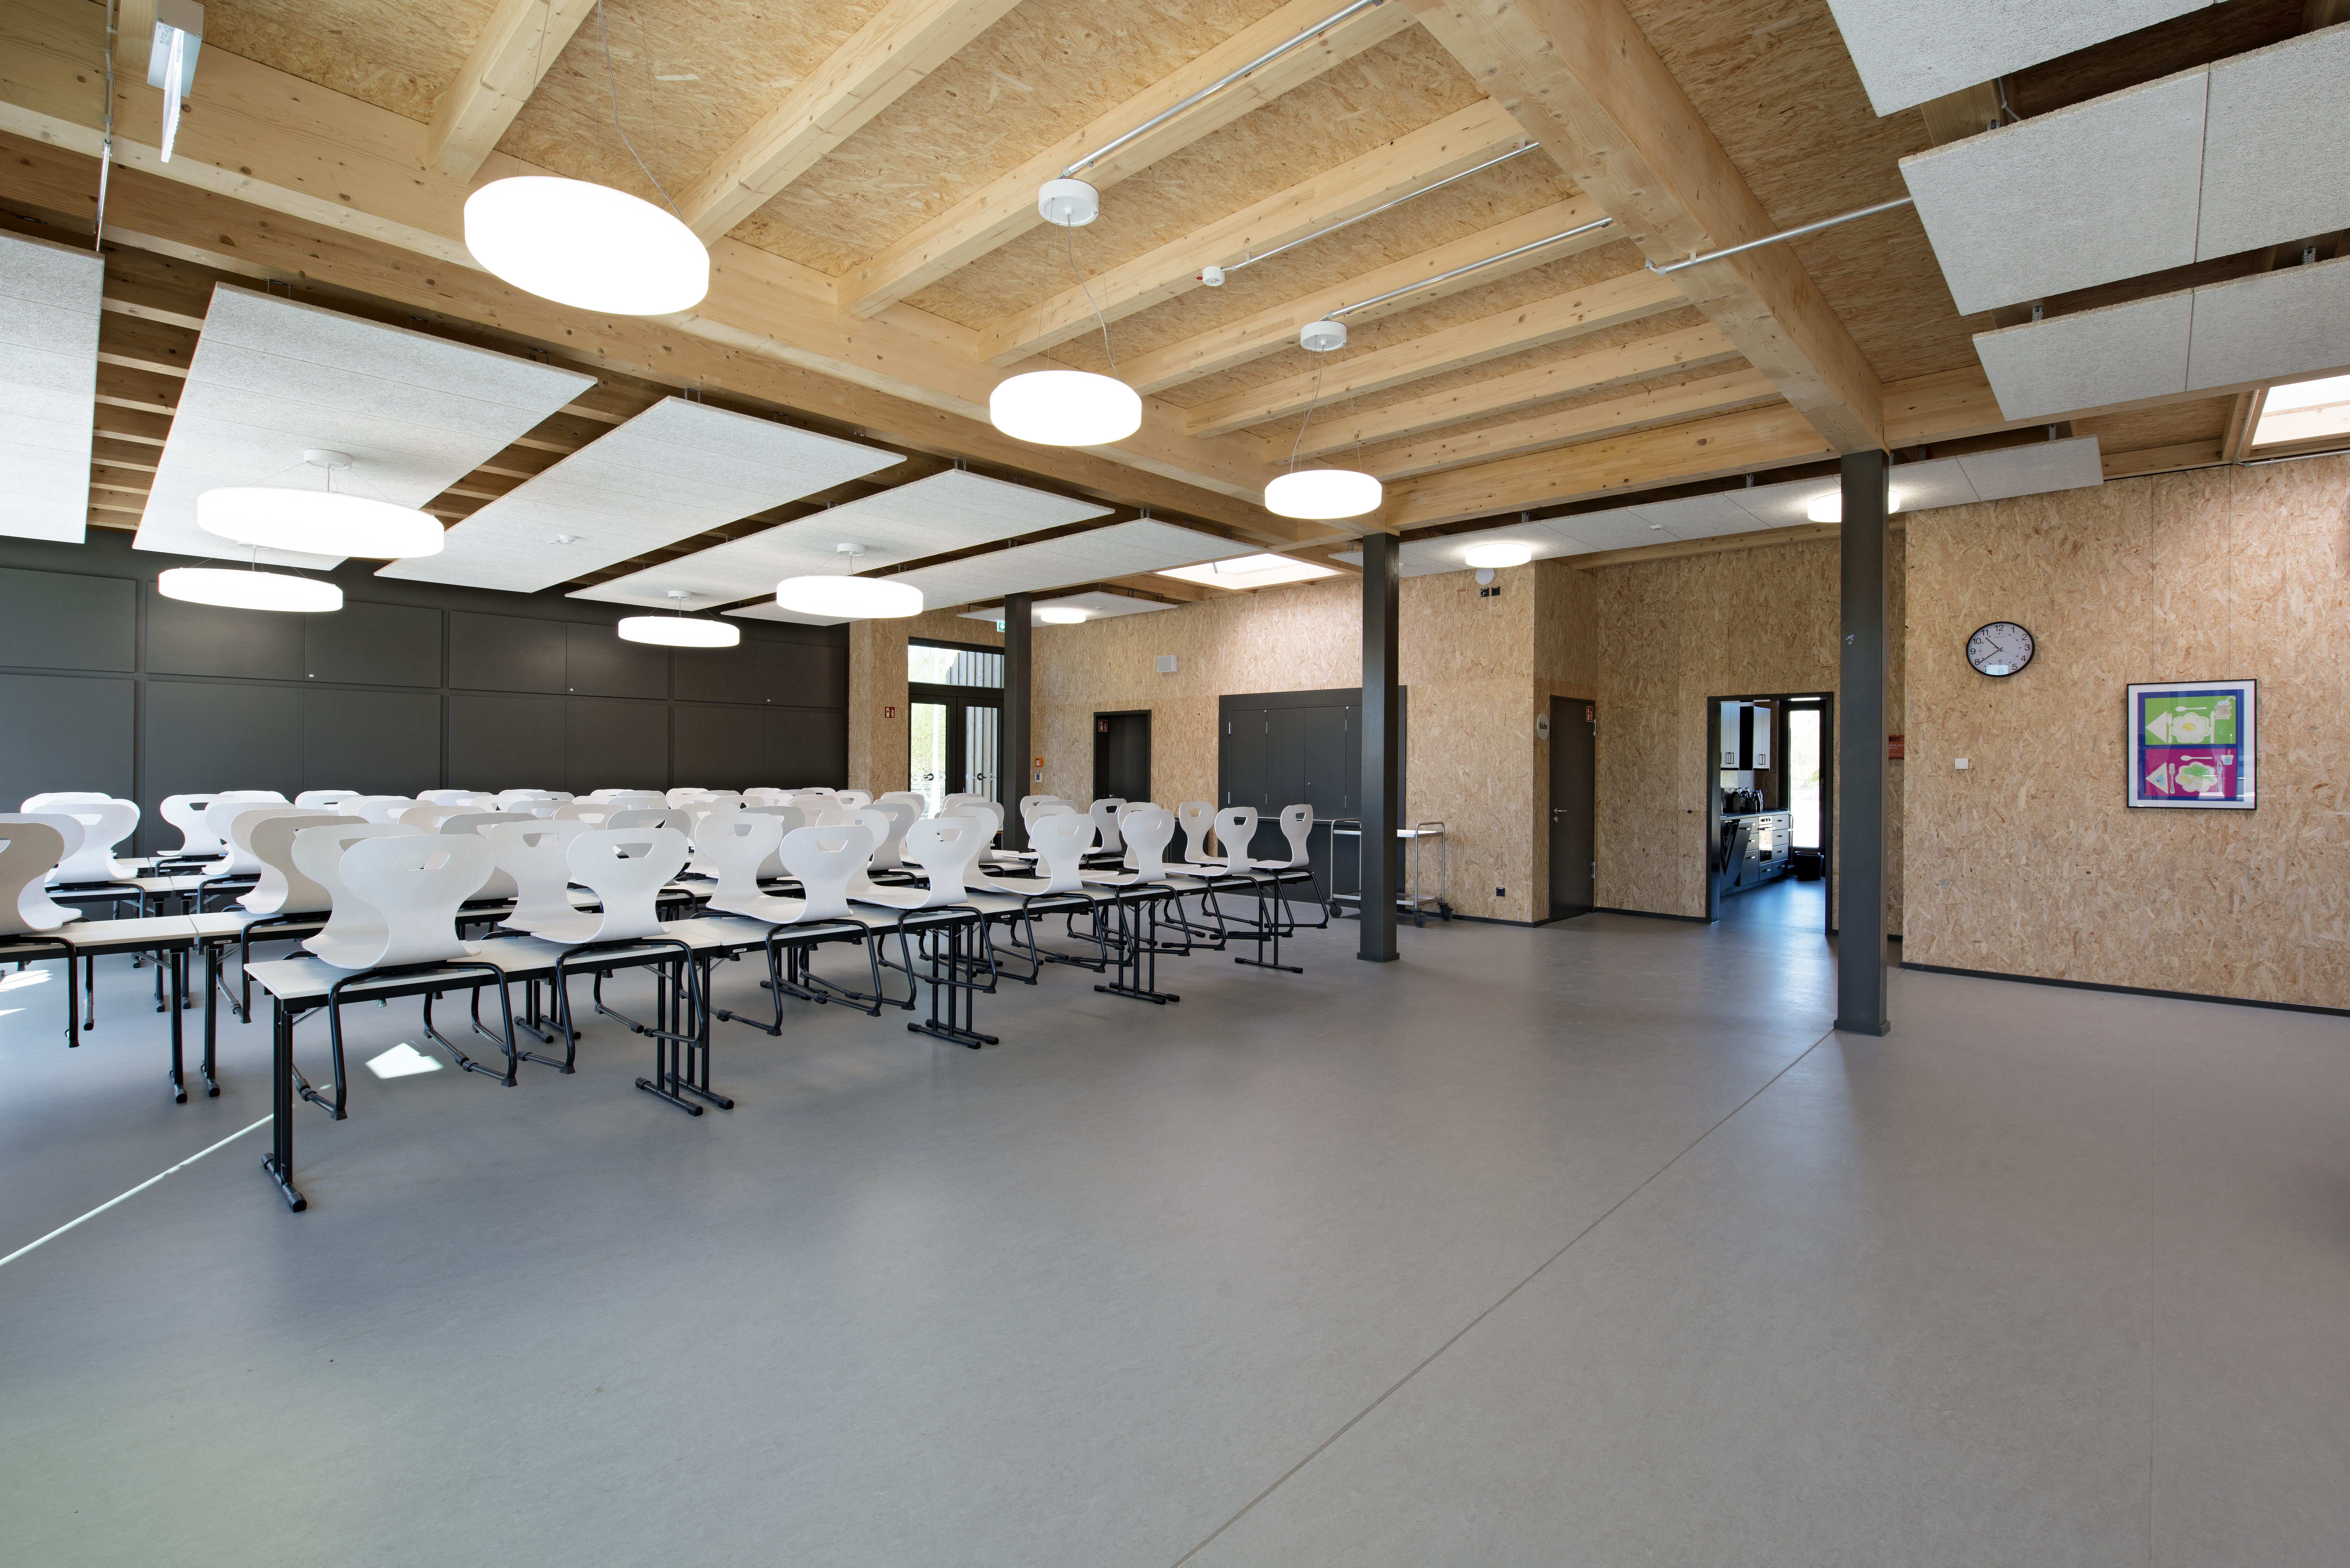 Nová budova školy Roberta Lansemanna ve Wismaru. © Jana Sprockhoff